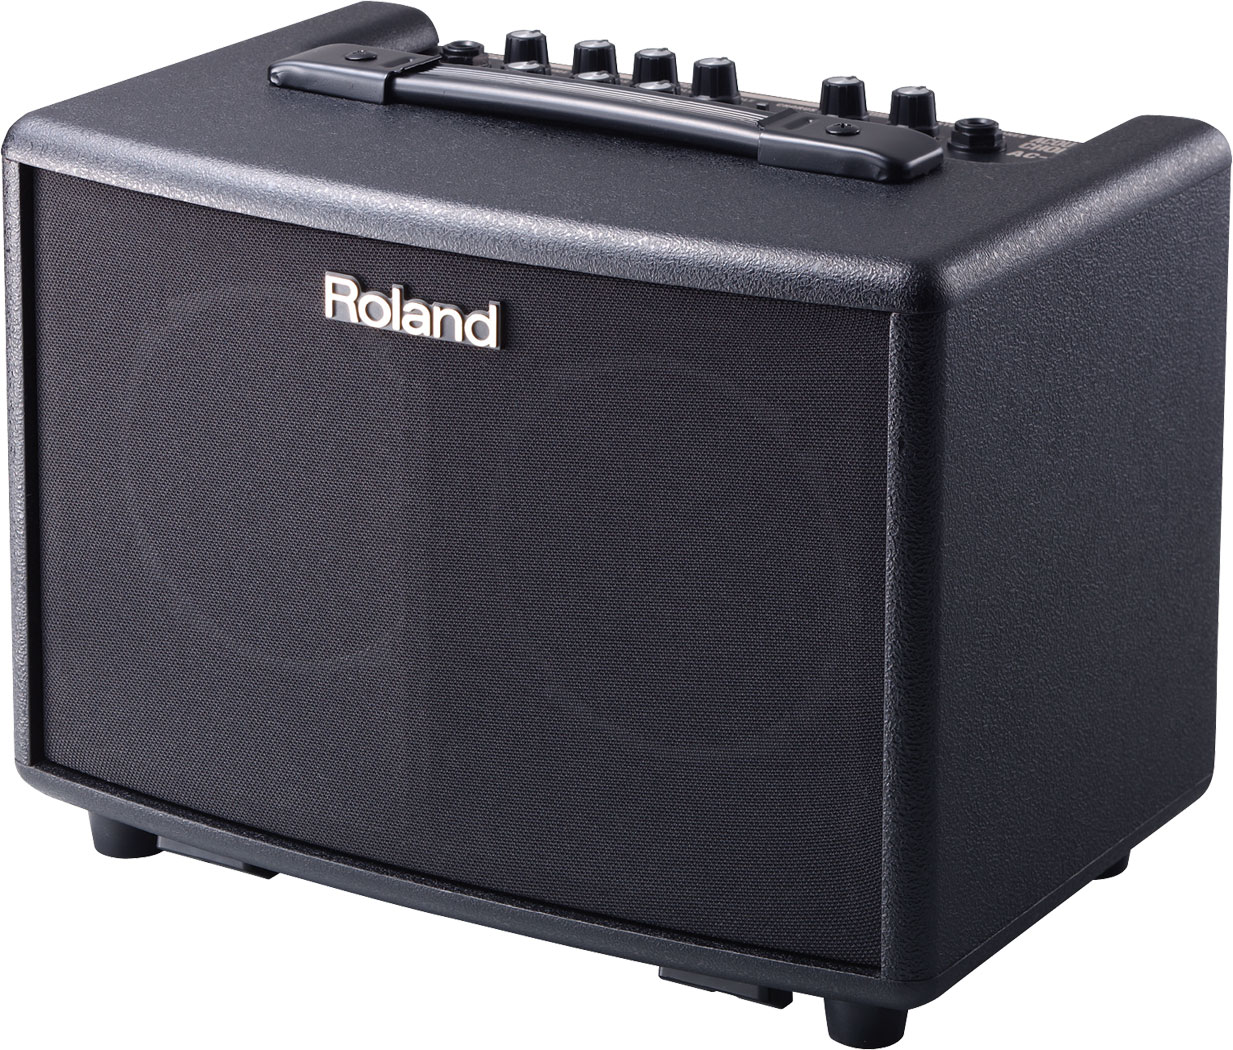 Roland - AC-33 | Acoustic Chorus Guitar Amplifier